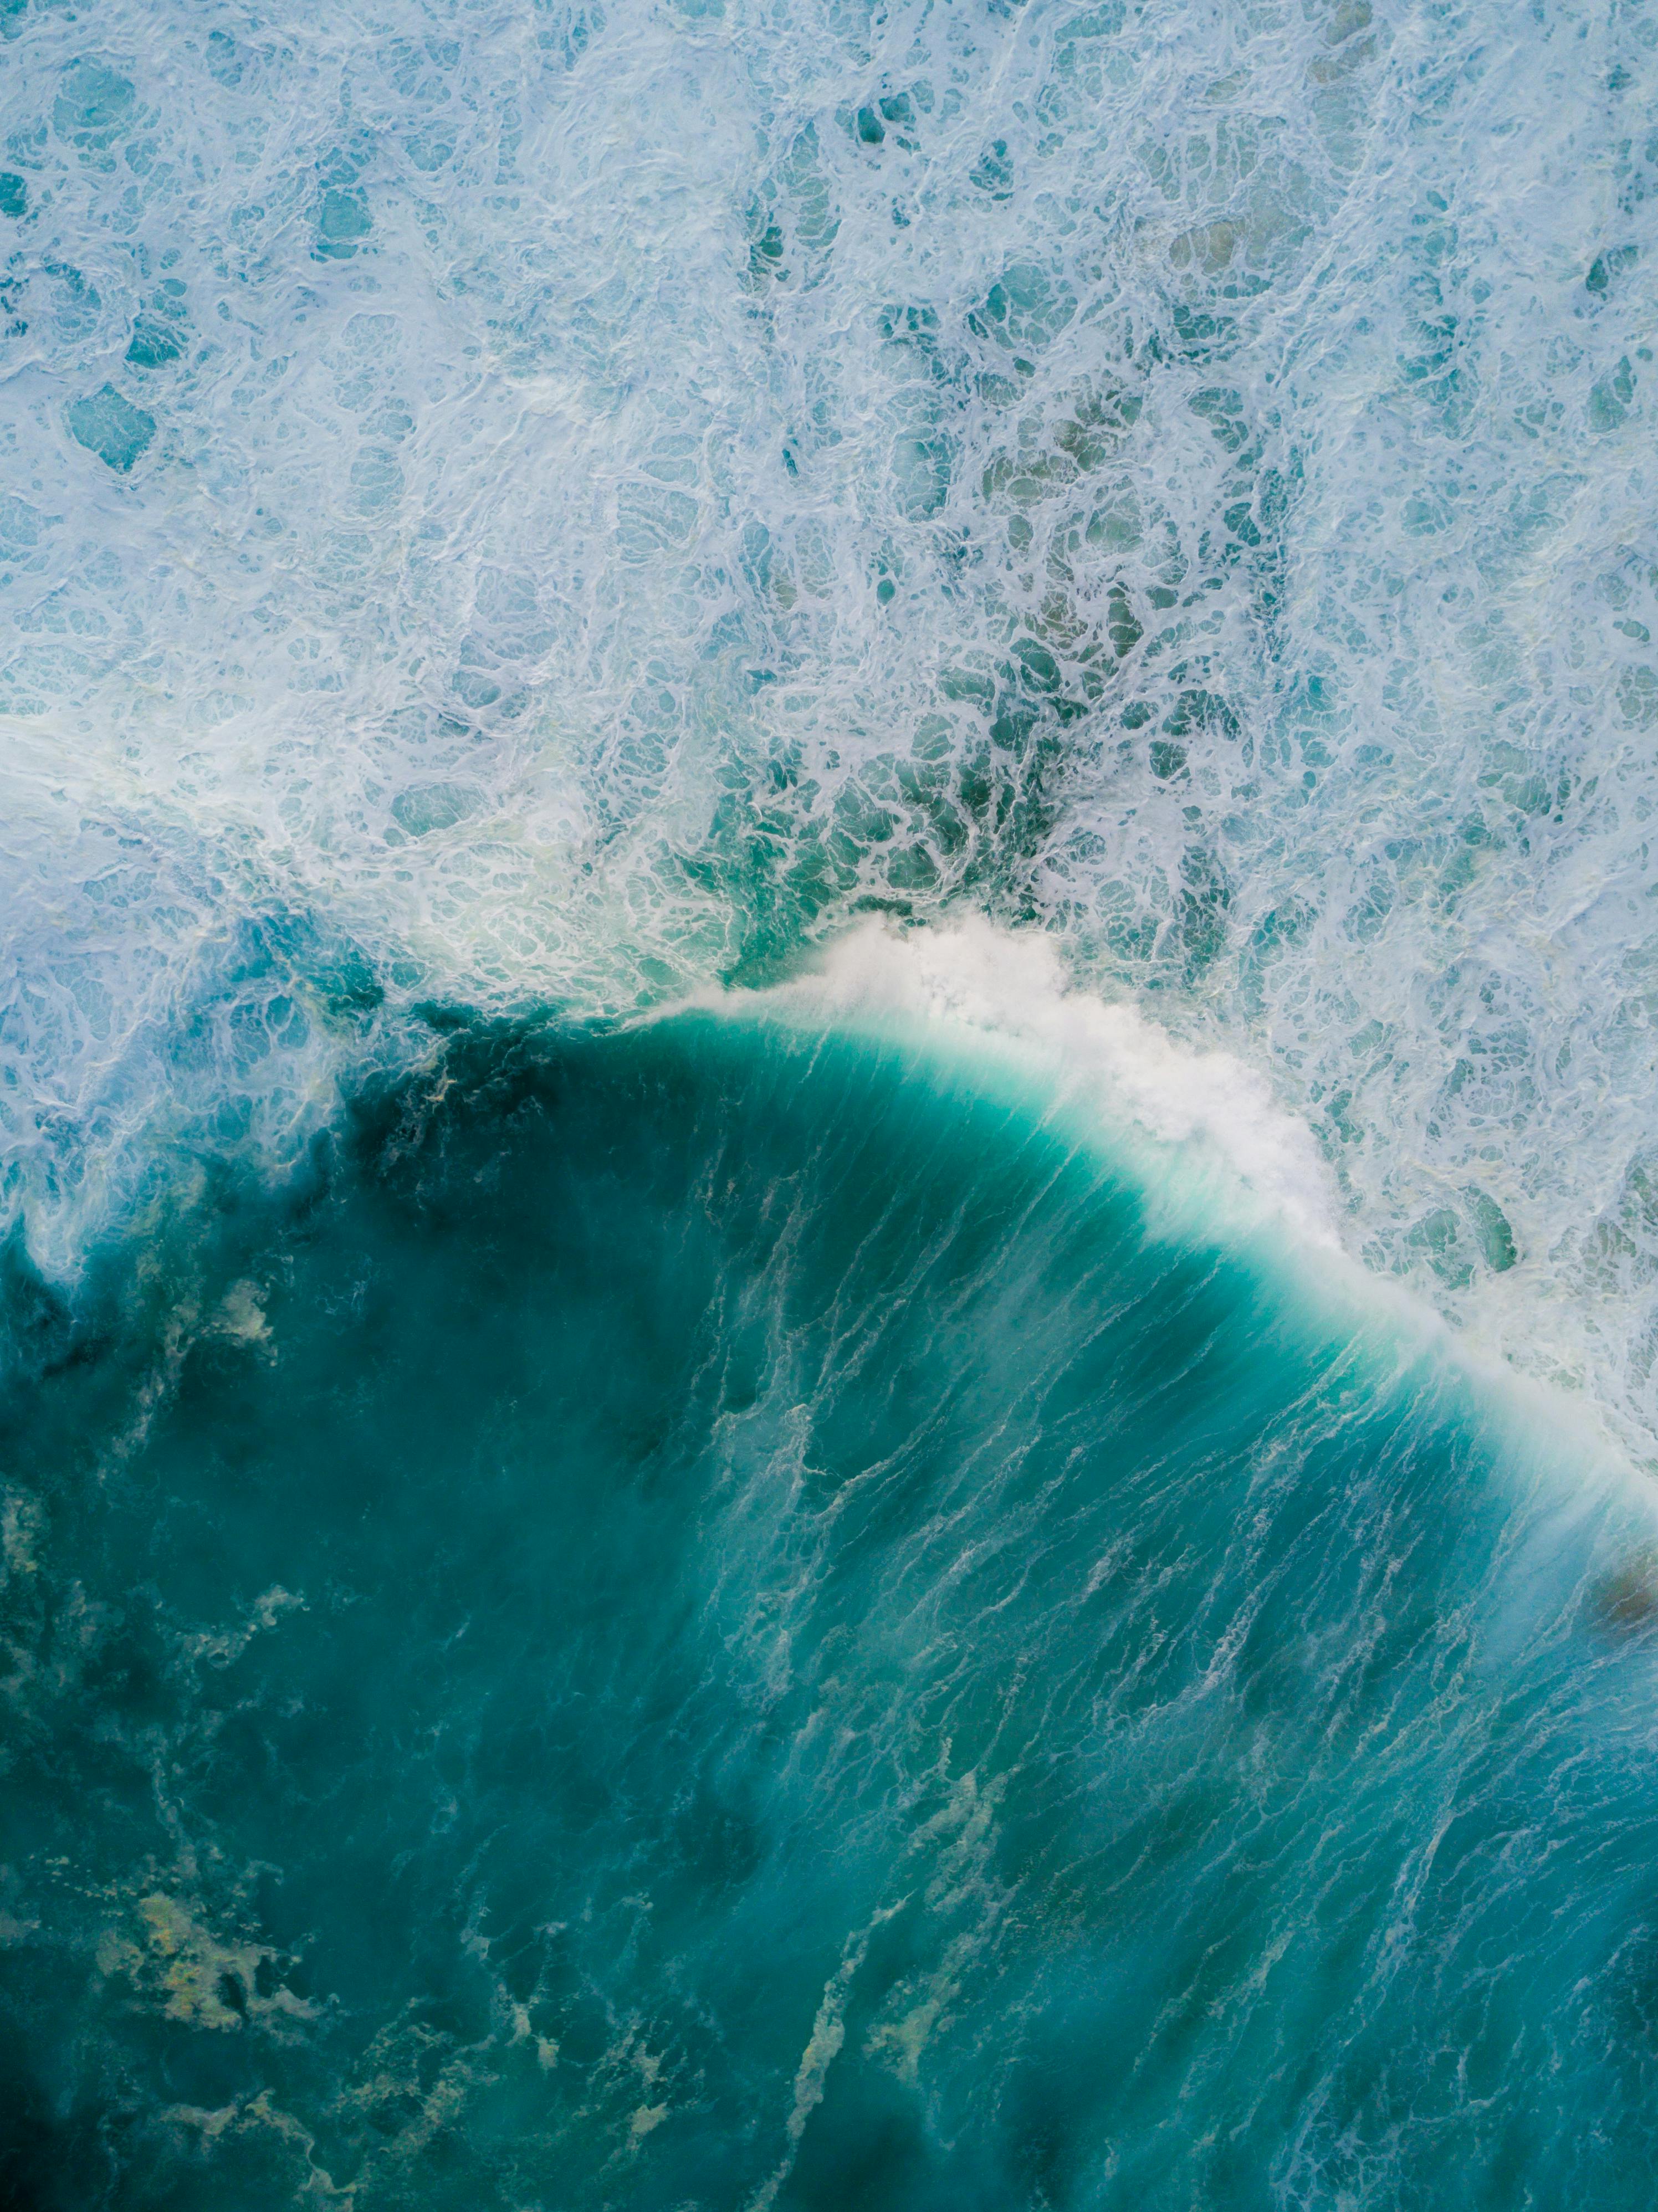 Sóng Biển: Dòng sóng bạt ngàn vỗ đến bờ, tạo ra một cảm giác đầy mê hoặc và thư giãn. Hãy chiêm ngưỡng những cơn sóng biển đẹp tuyệt vời này để cảm nhận được một trải nghiệm tuyệt vời mà thiên nhiên tặng cho ta.